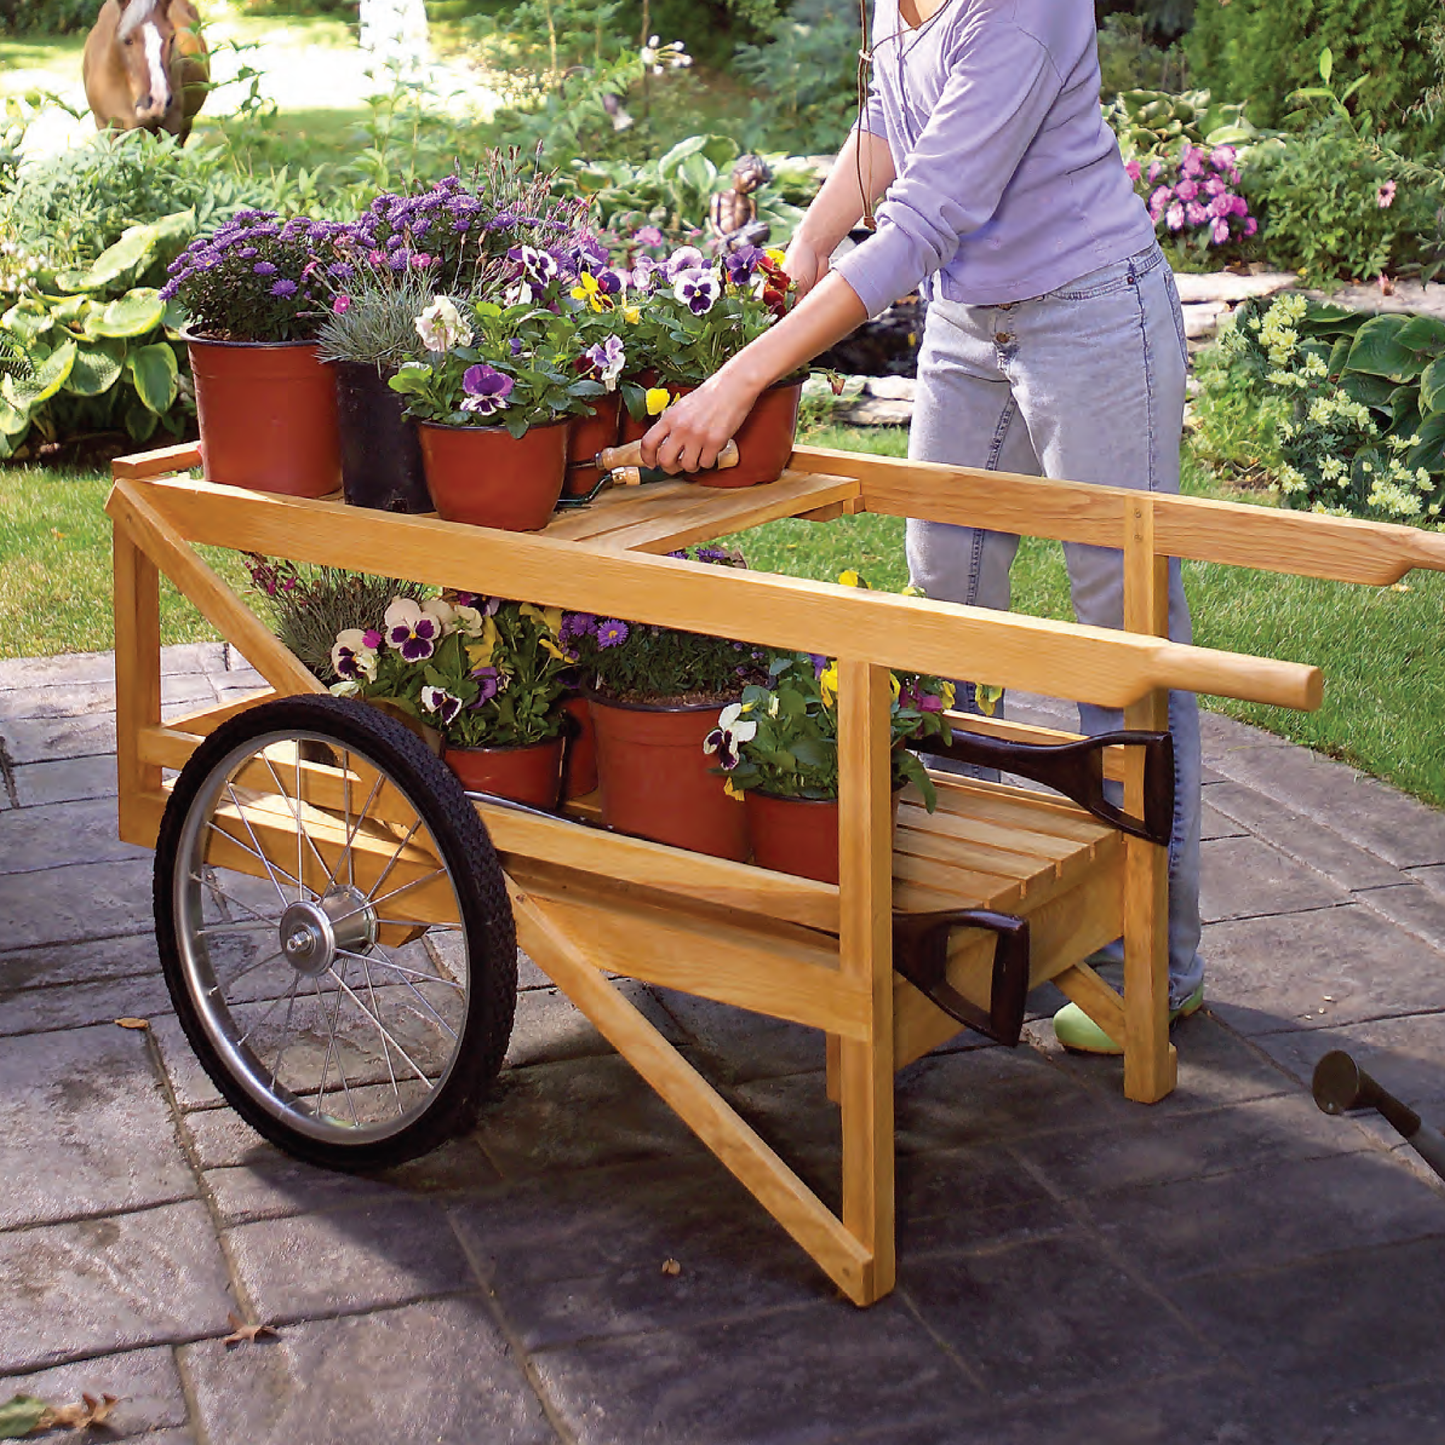 All-Purpose Garden Cart - Family Handyman Shop